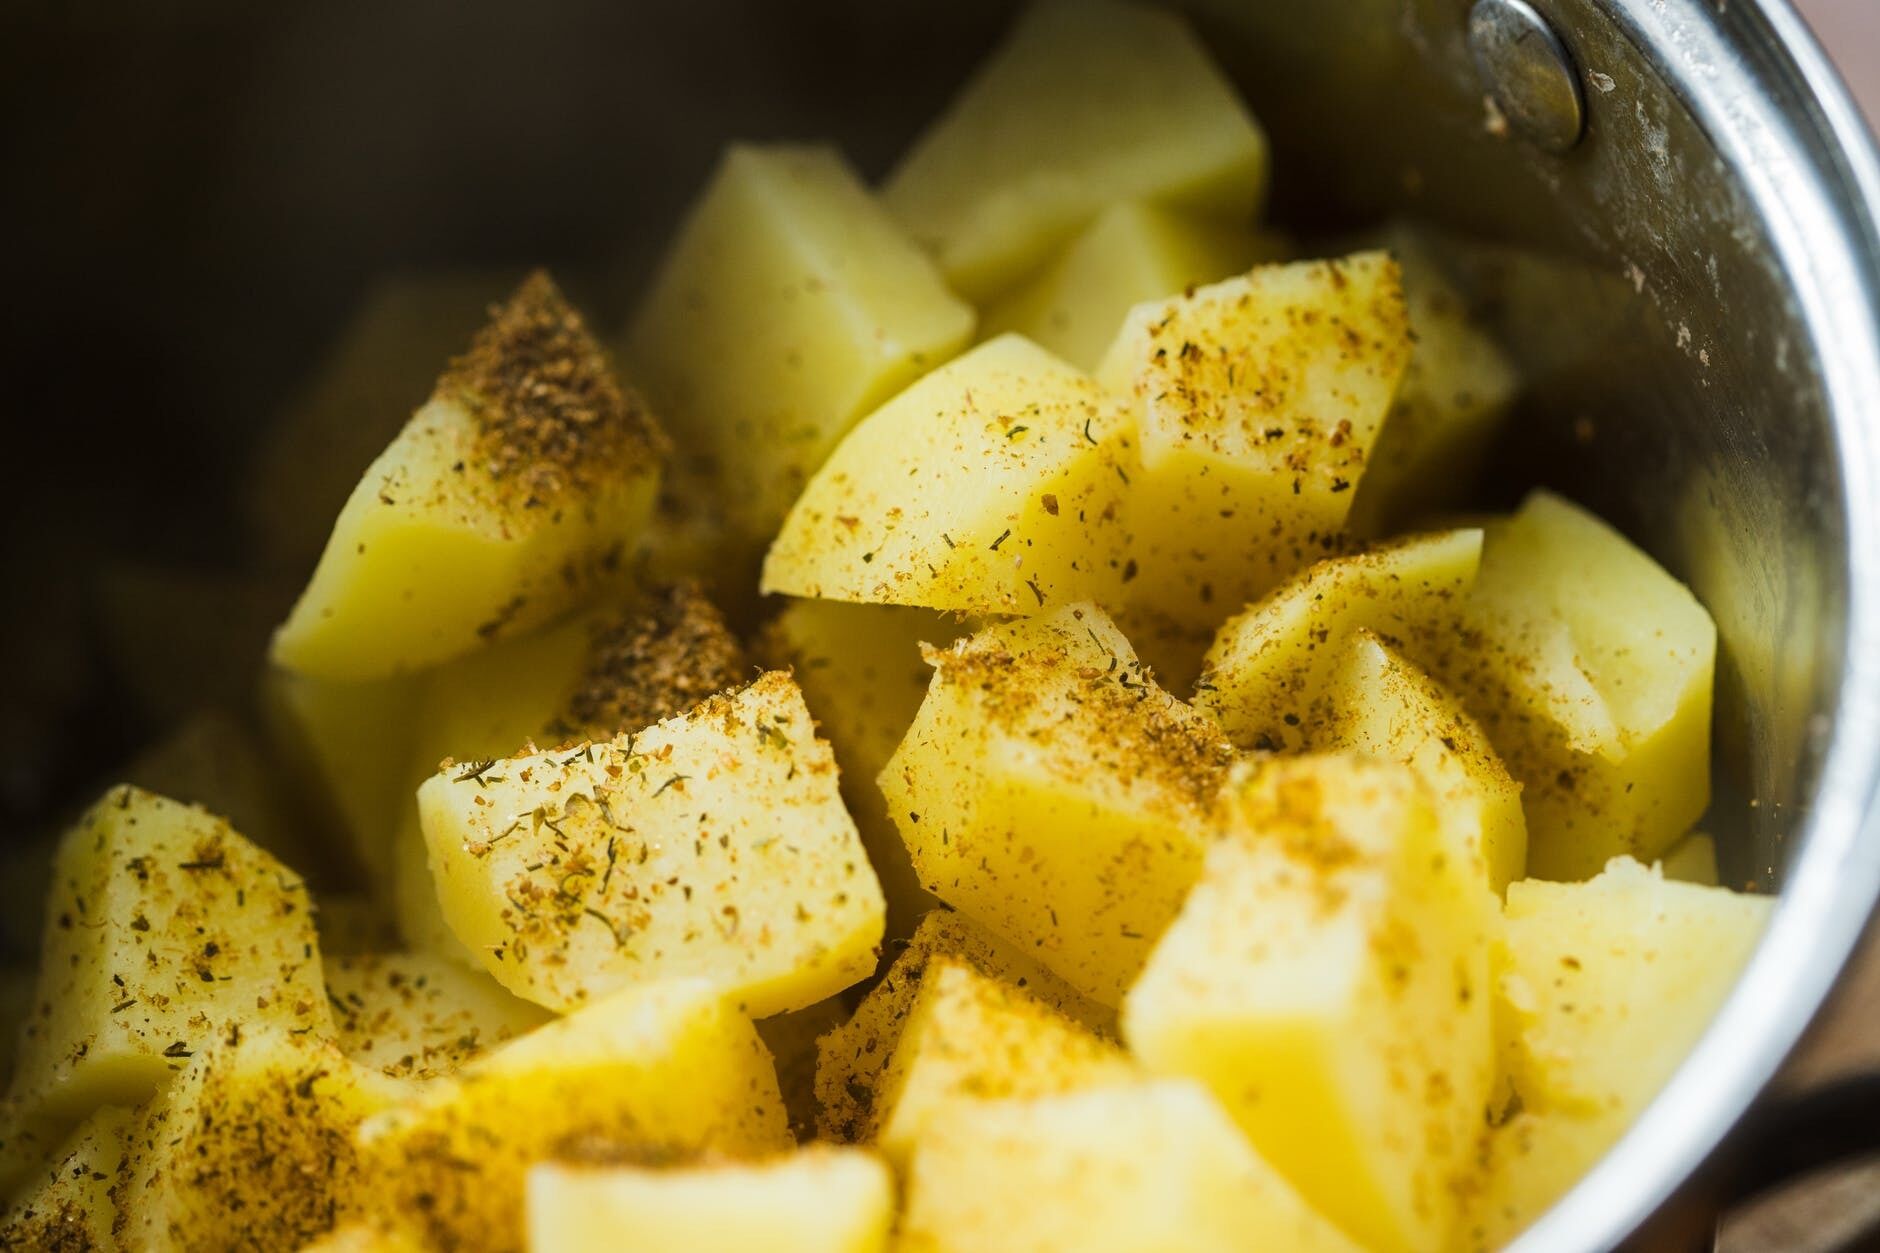 Що додати в картопляне пюре, щоб воно було ніжним, що приготувати з картполяного пюре на обід